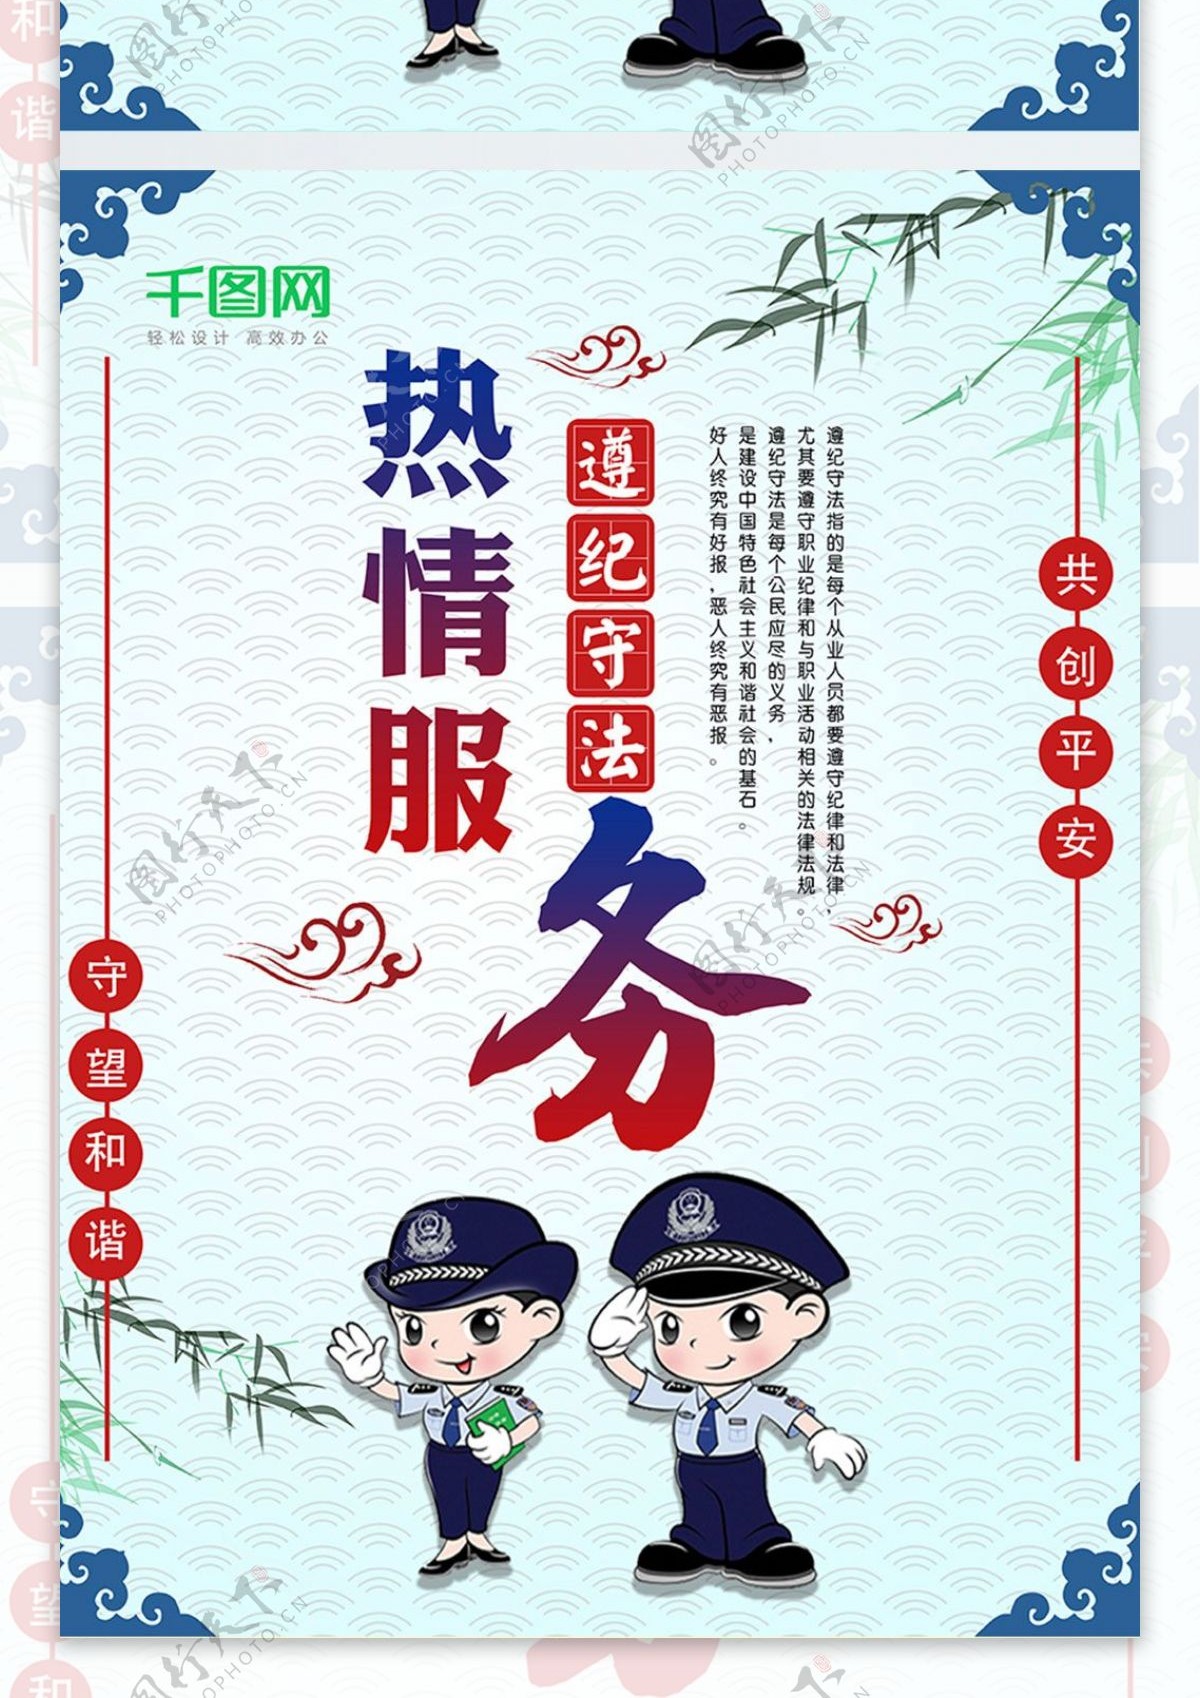 立警为公秉公执法服务公安蓝色简约系列海报